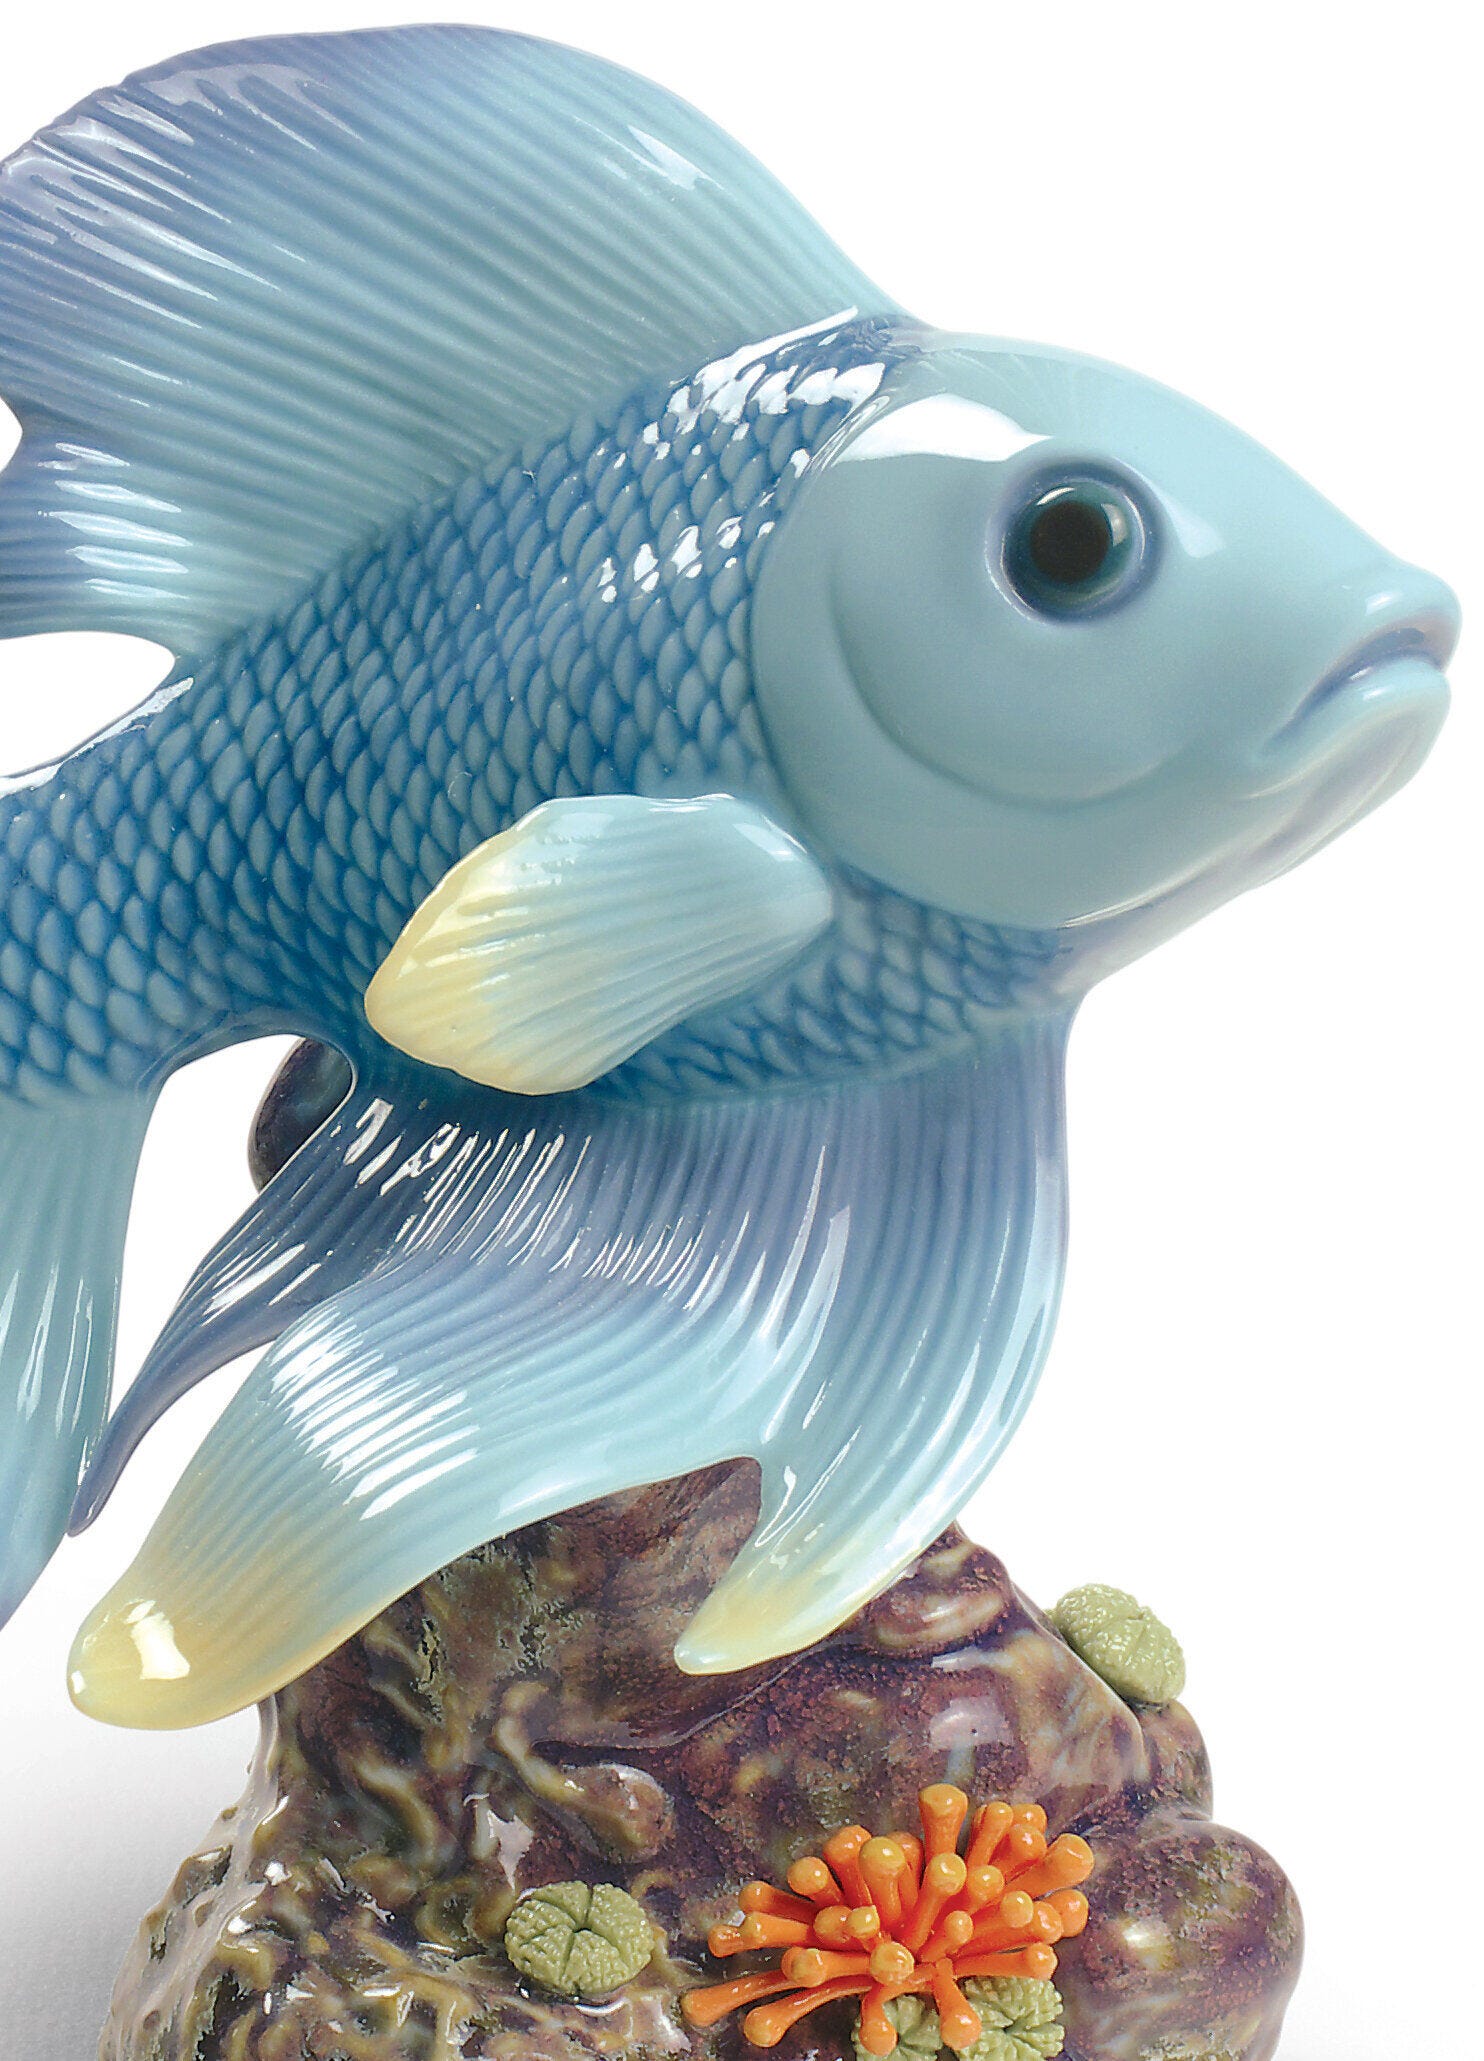 Pond Dreamer Fish Figurine